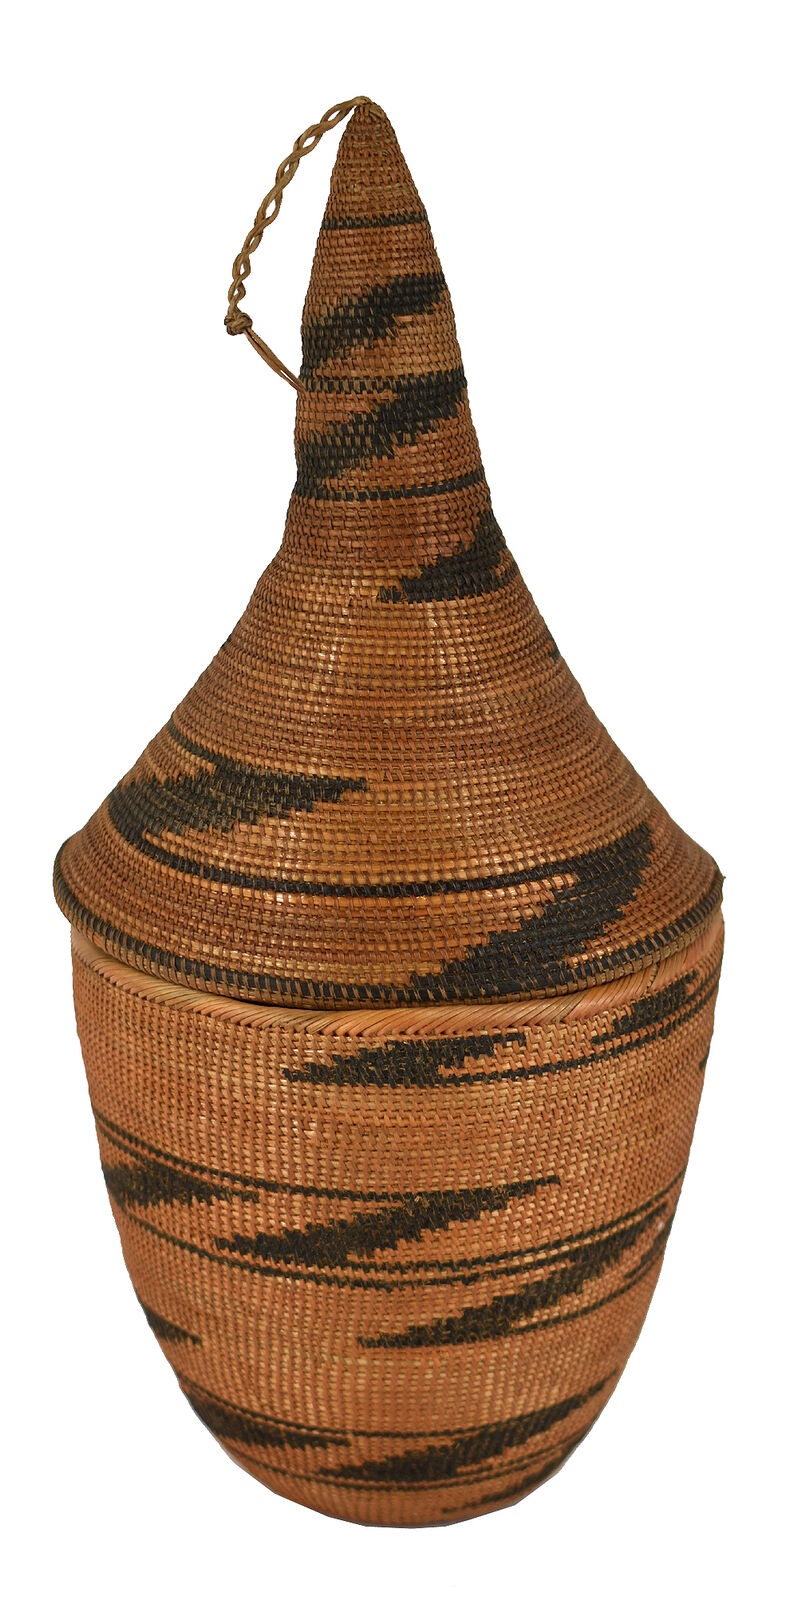 Tutsi Basket Lidded Tight Weave Rwanda Old African Art Sale Was $200.00